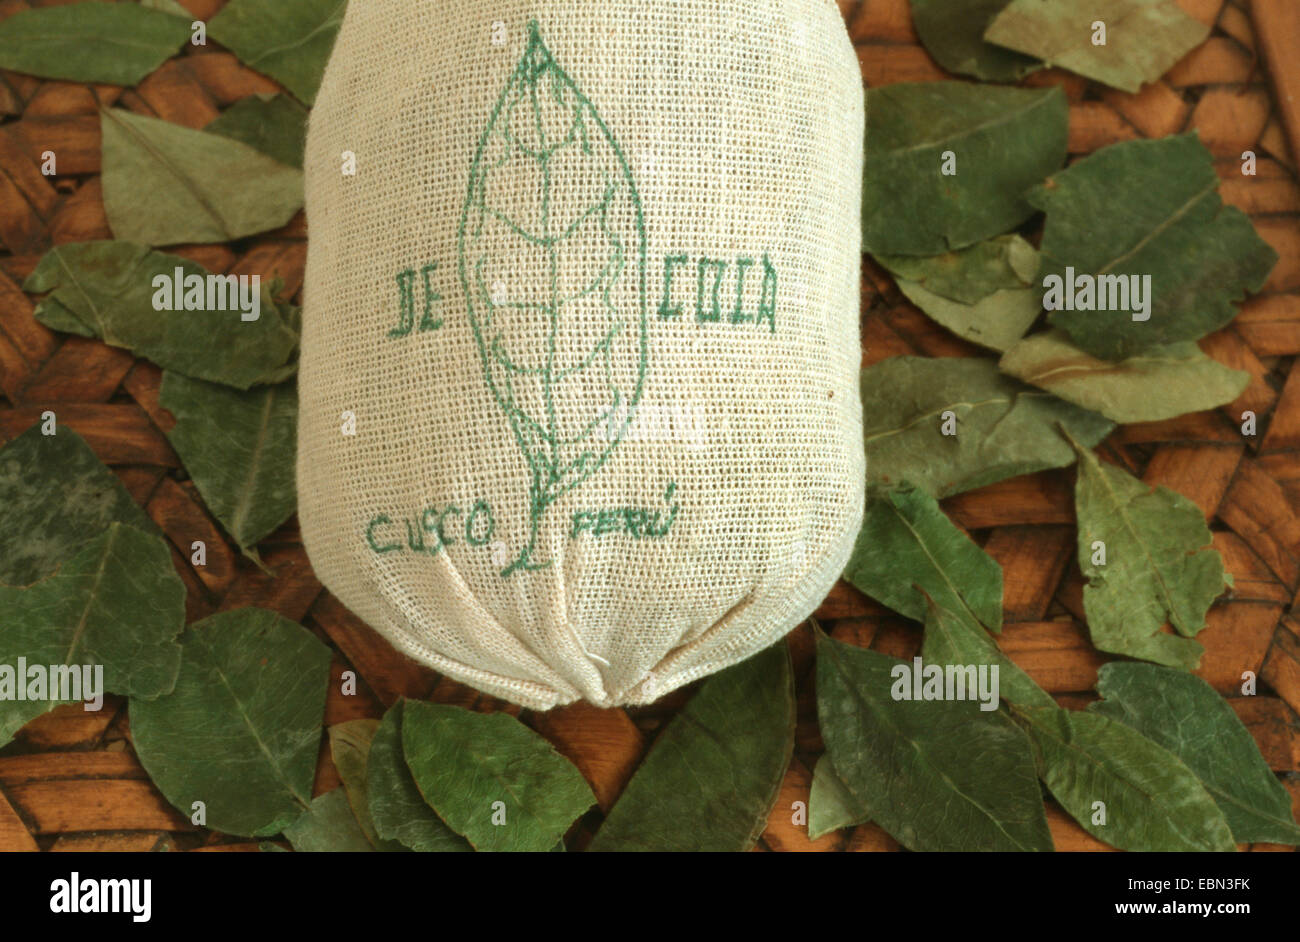 La cocaïne, coca bolivien (erythroxylon coca, Erythroxylum coca), des feuilles séchées de la cocaïne Banque D'Images